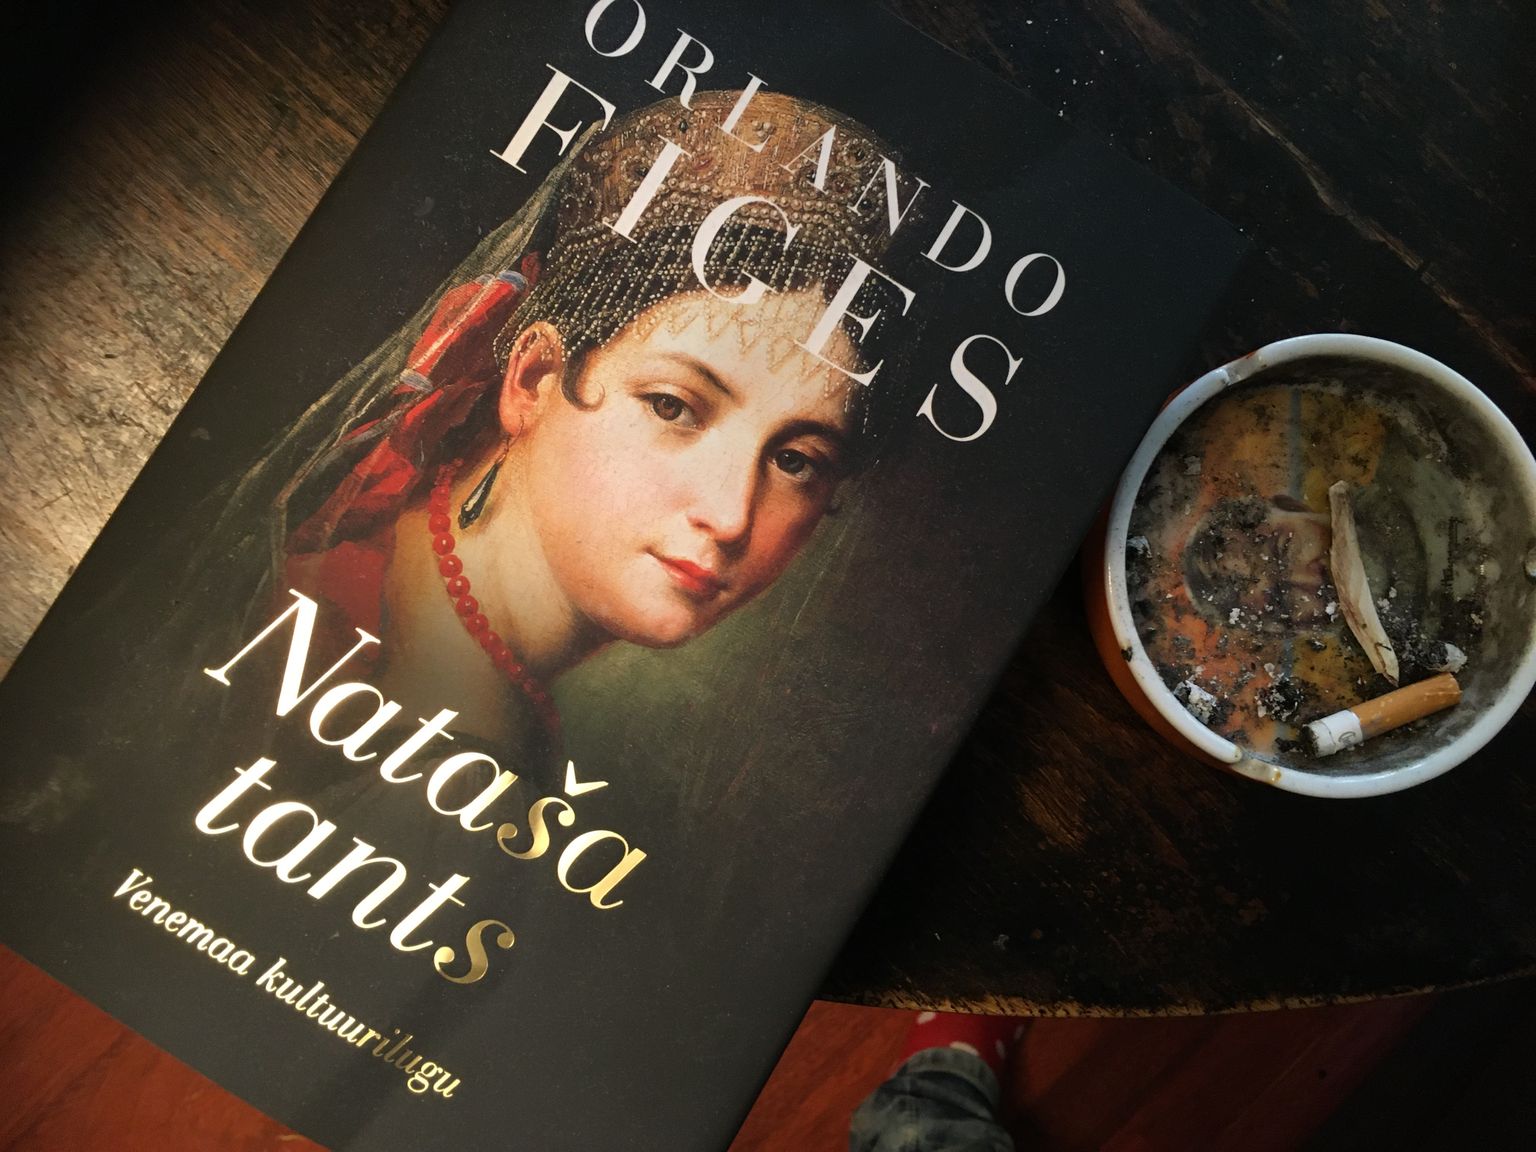 Orlando Figese raamat "Nataša tants" võiks olla iga lugemisoskust omava inimese öölaual. Tuhatoos ei pea olema.